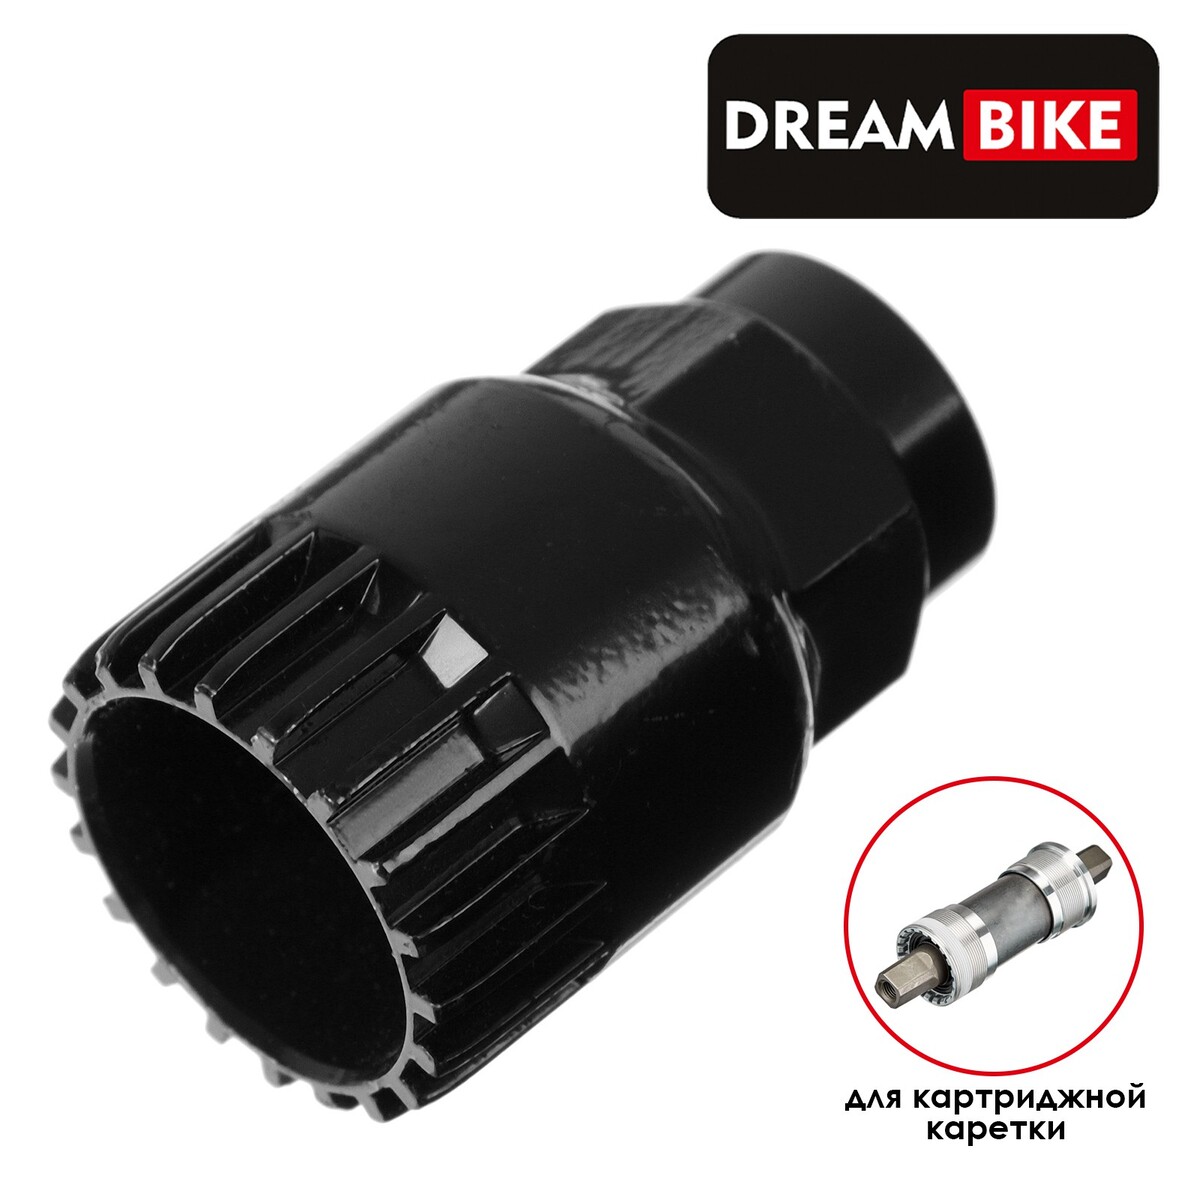 Съемник каретки dream bike gj-022-1 съемник cyclo каретки картриджа 7 06396